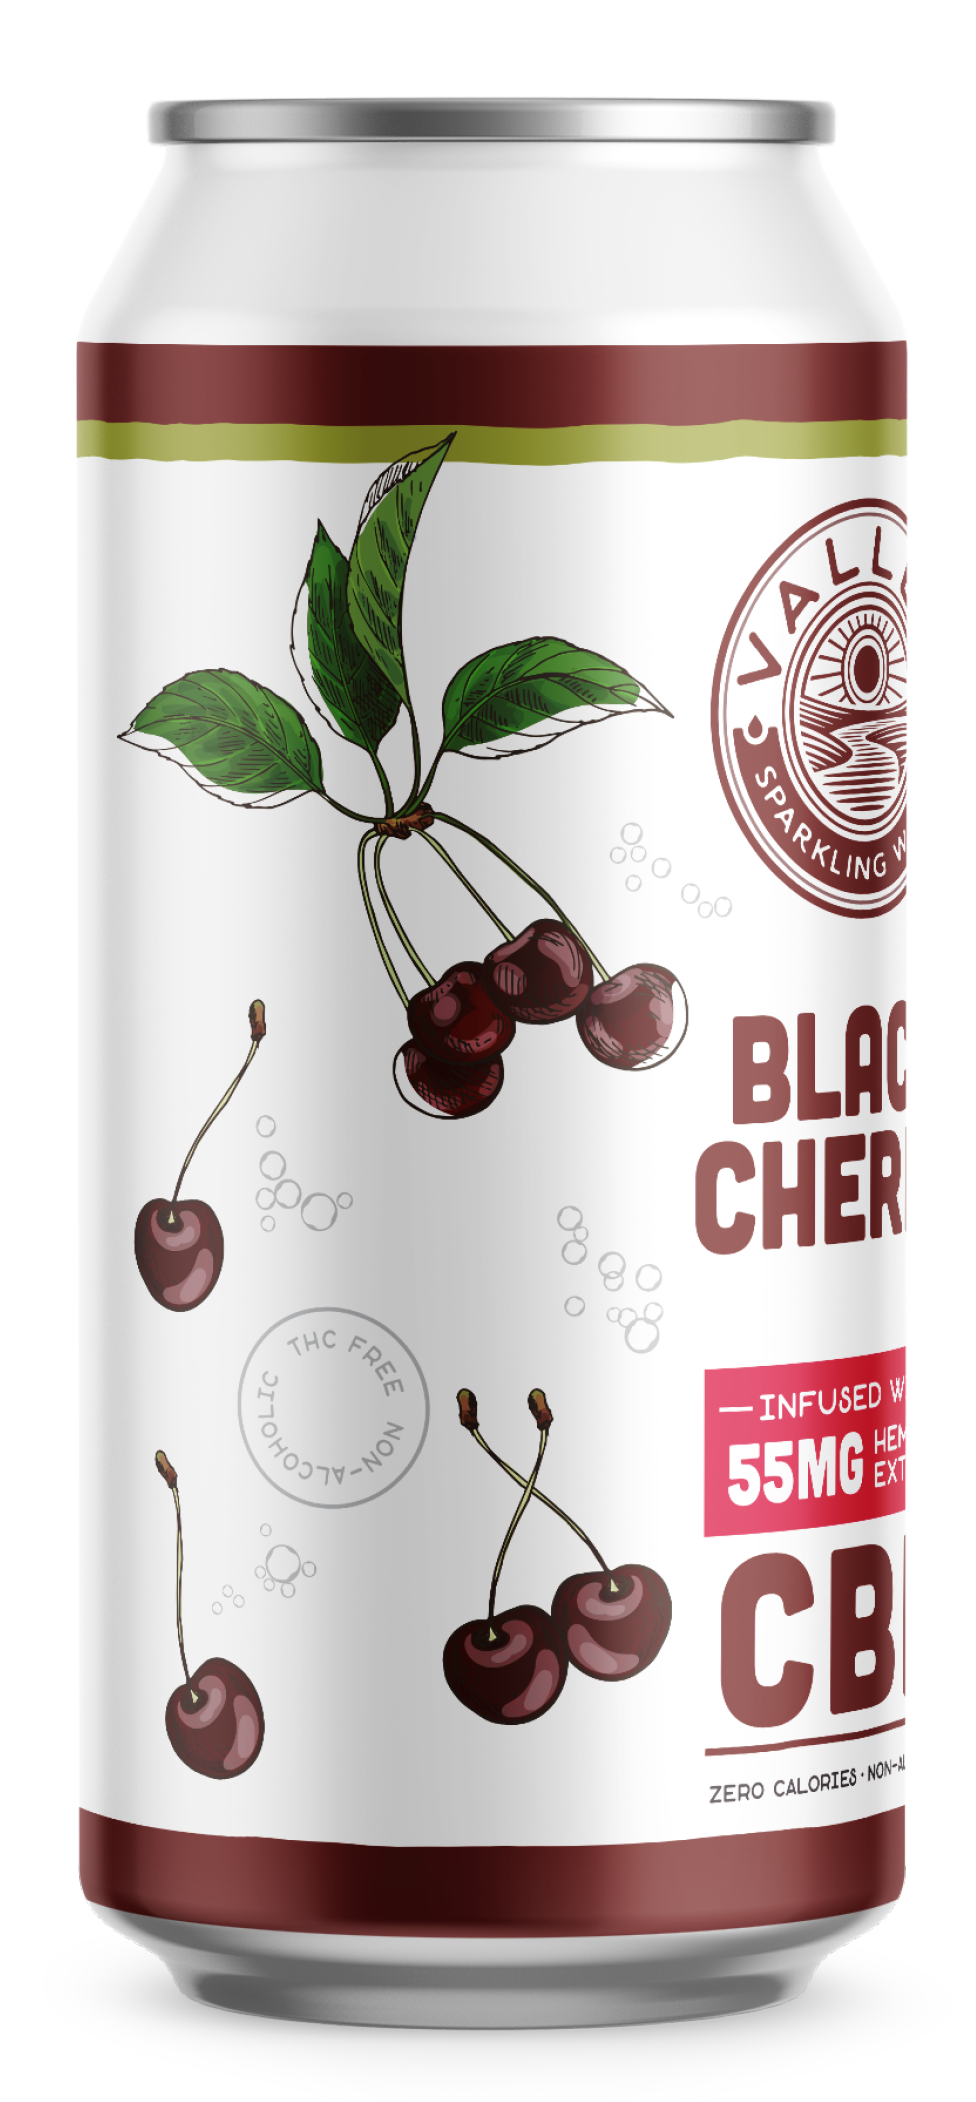 Black Cherry 55MG